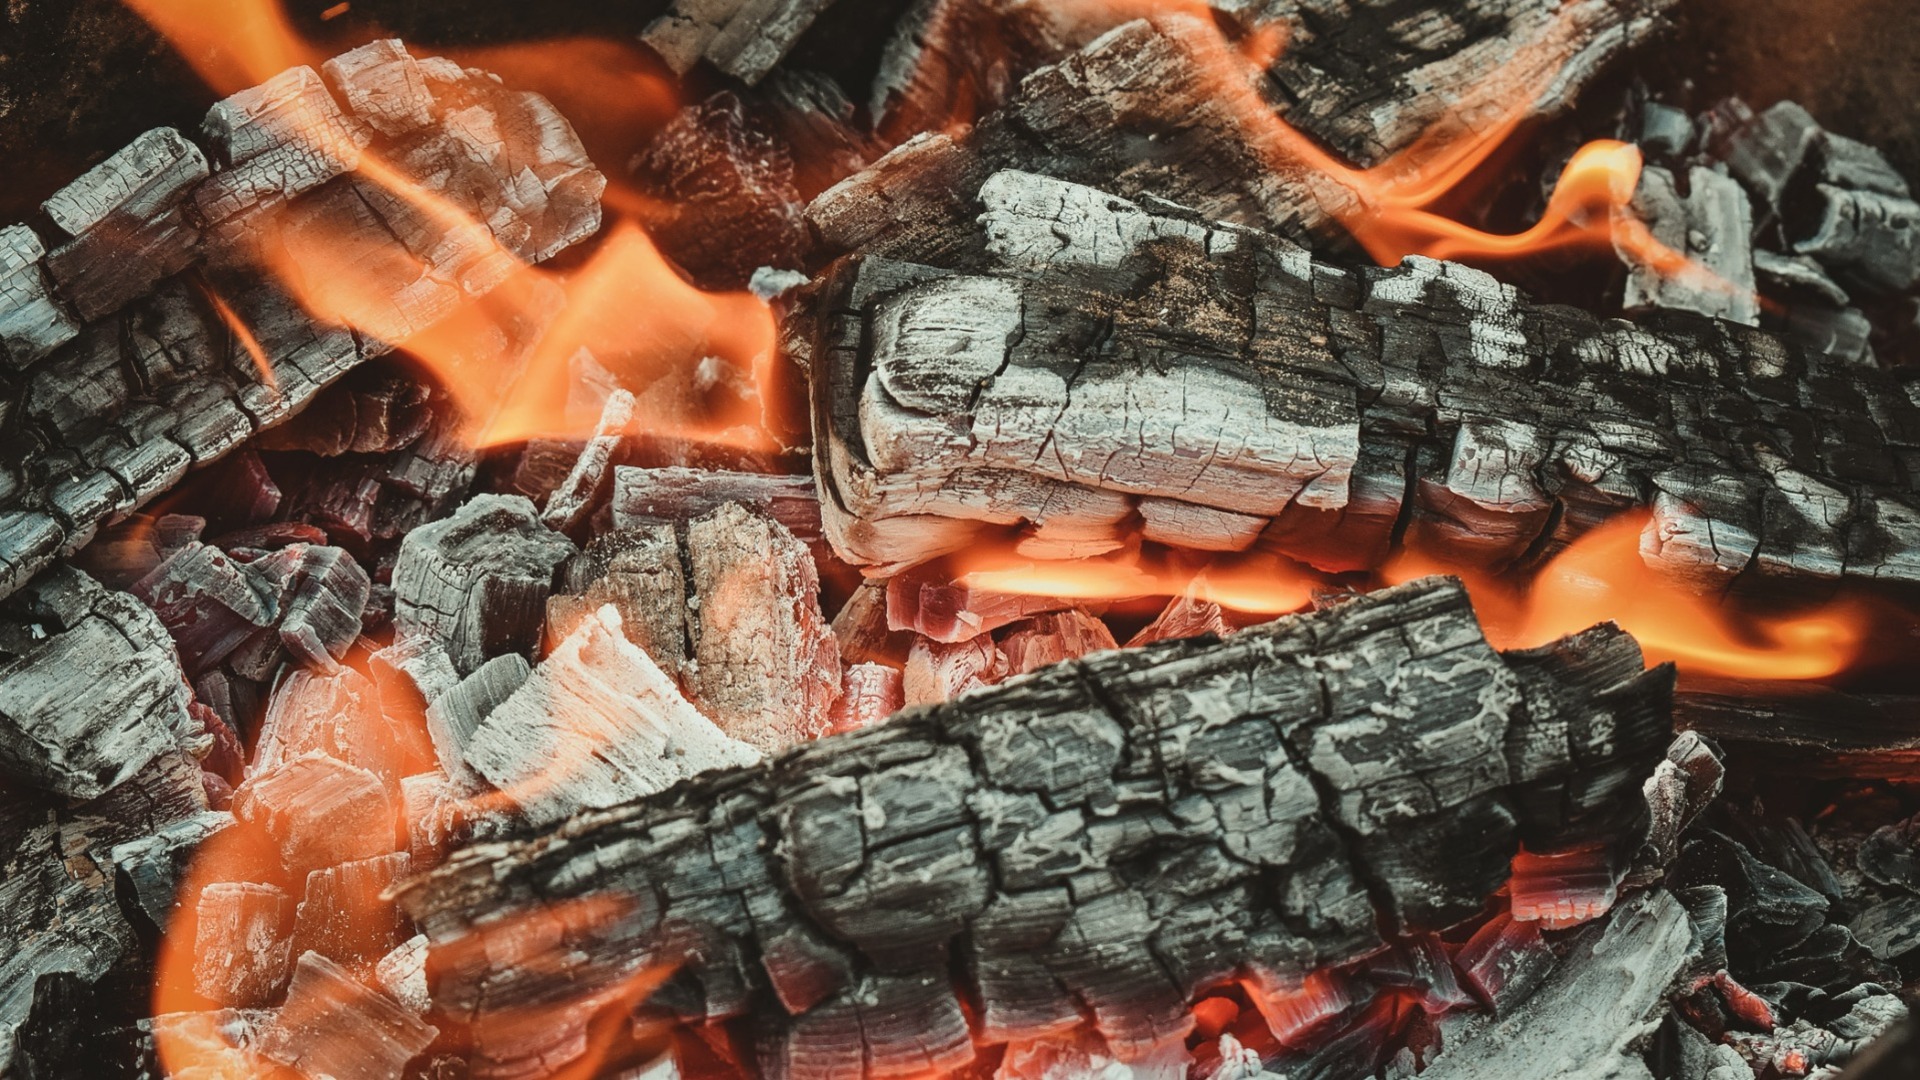 Нижегородский подросток получил серьезные ожоги при попытке разжечь угли для шашлыков